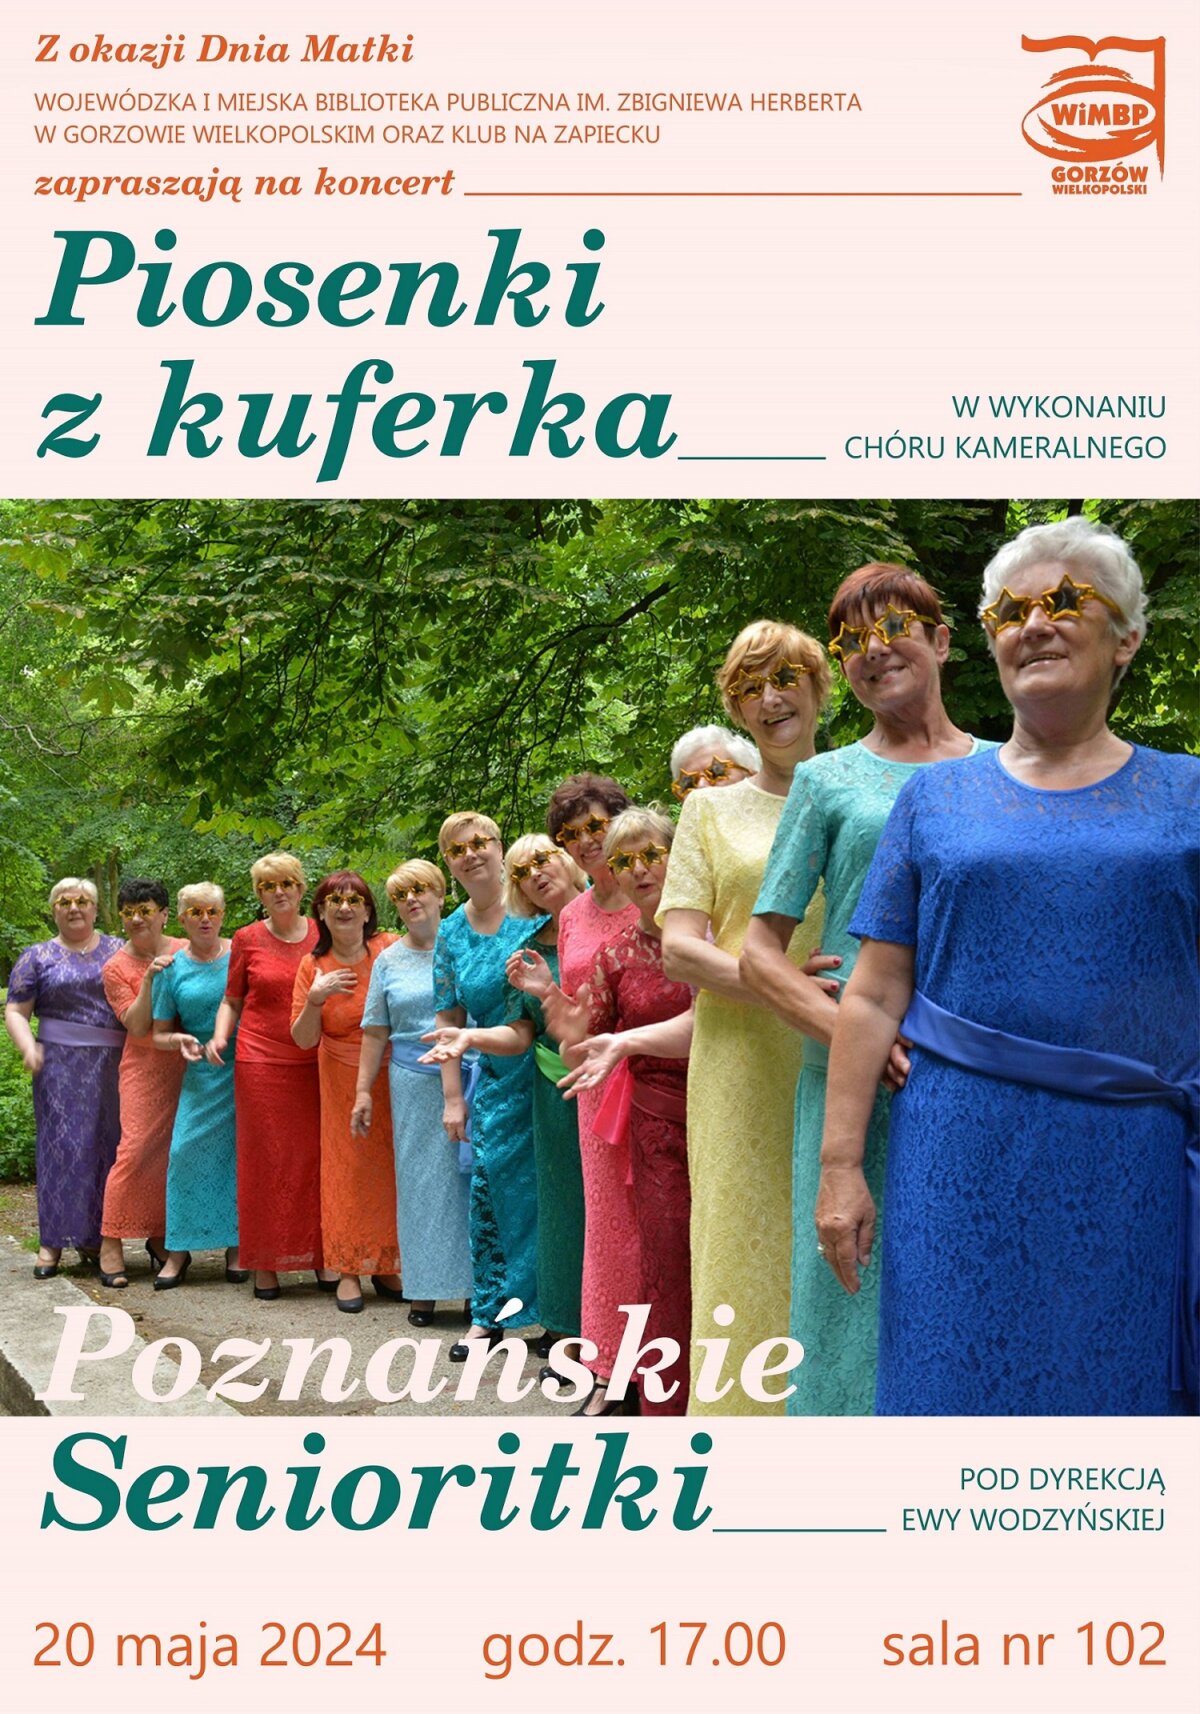 Plakat promujący wydarzenie z wizerunkami kobiet w kolorowych strojach.